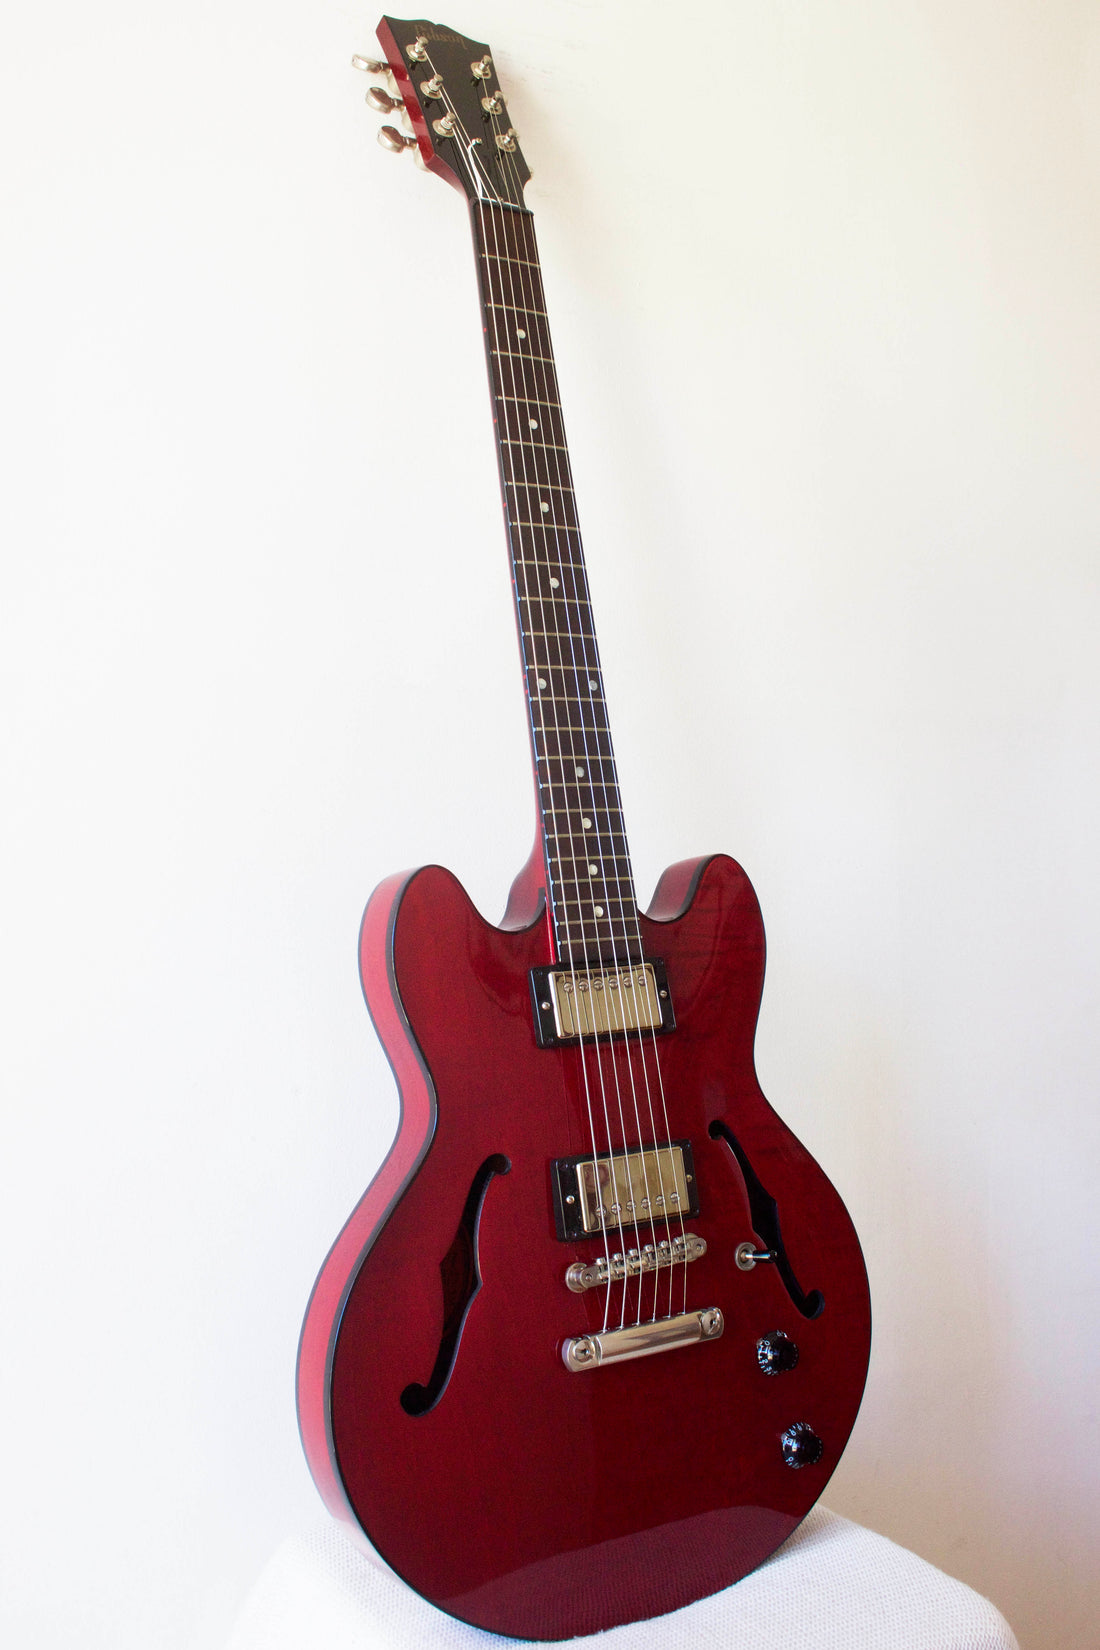 Gibson ES-339 Studio Wine Red 2015 – Topshelf Instruments